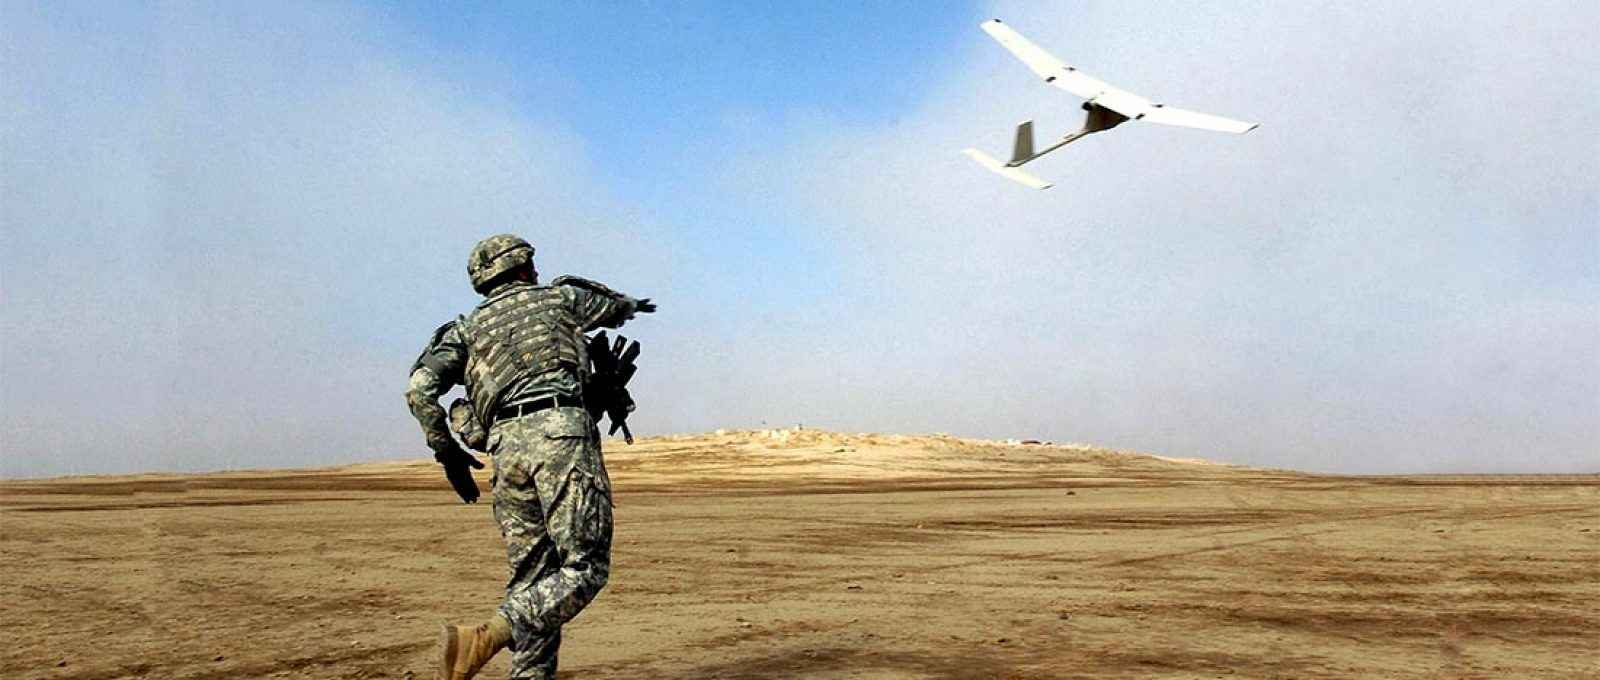 Militar do exército dos EUA lançando um mini-drone Raven, imagem de 22 de novembro de 2006 (Foto: Sgt 1st Class Michael Guillory/US Army).